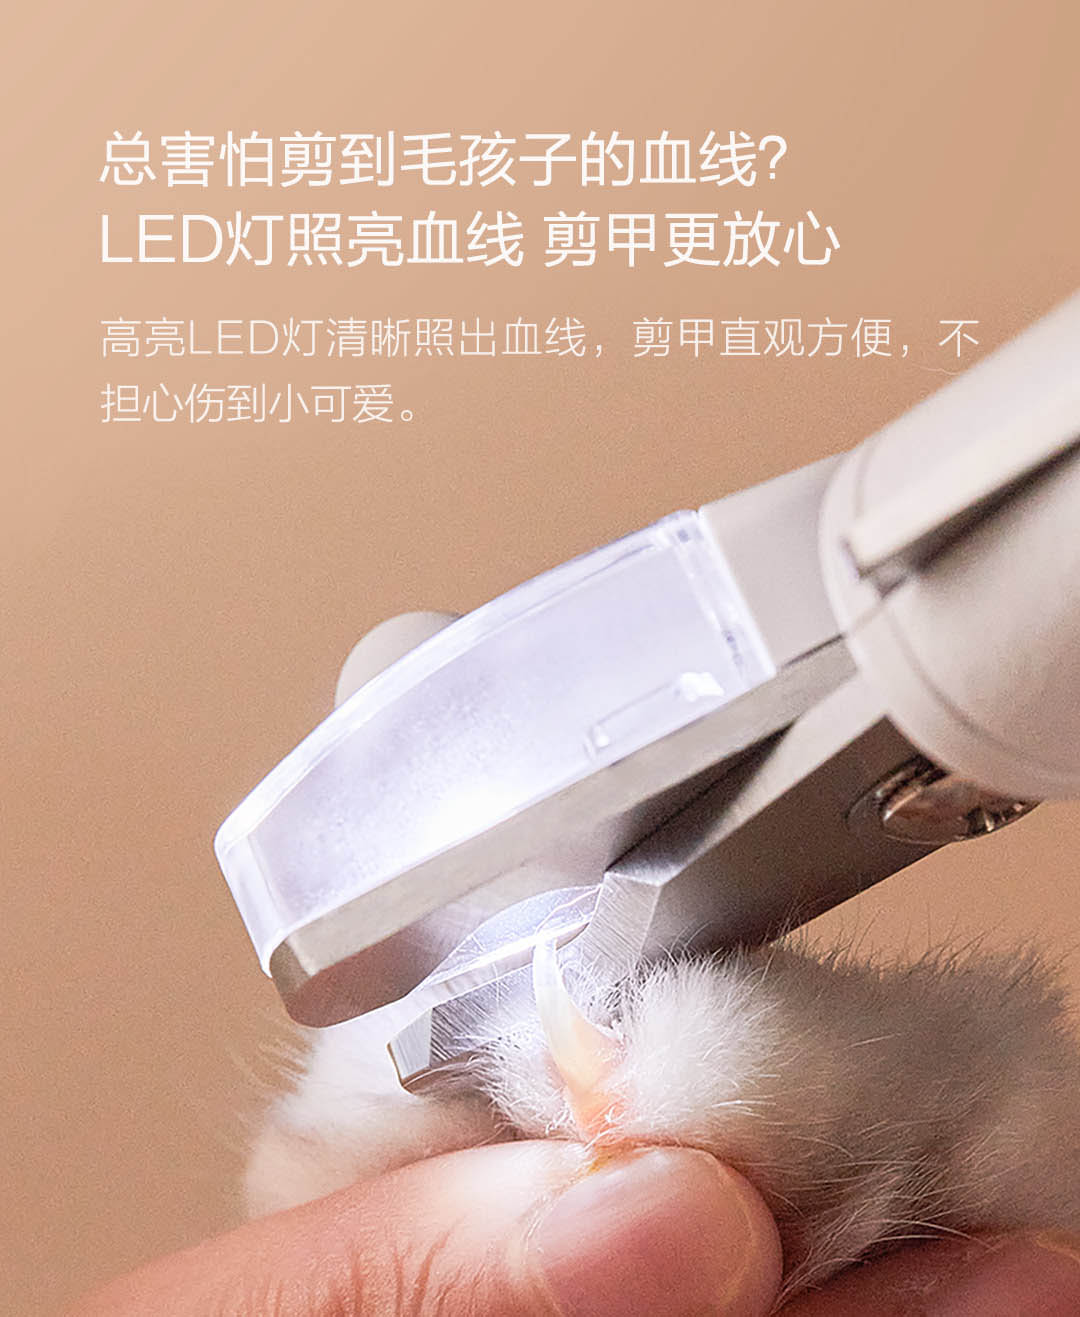 【中国直邮】小米有品 小佩宠物LED指甲剪